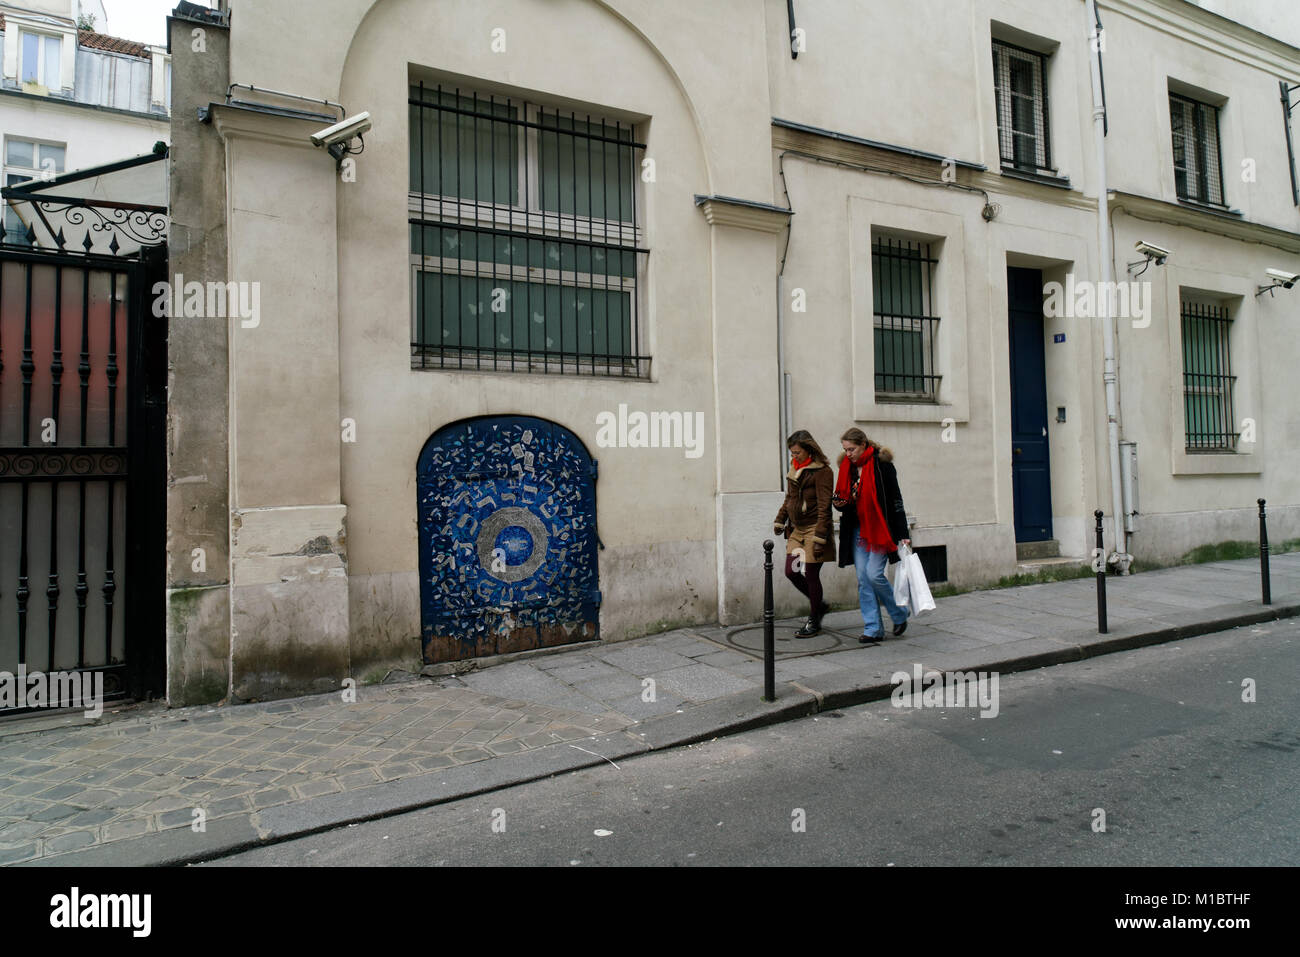 Une école juive sur la rue pavée dans le quartier du Marais à Paris est affilié à un Juif orthodoxe, synagogue Agoudas Hakehilos. Banque D'Images